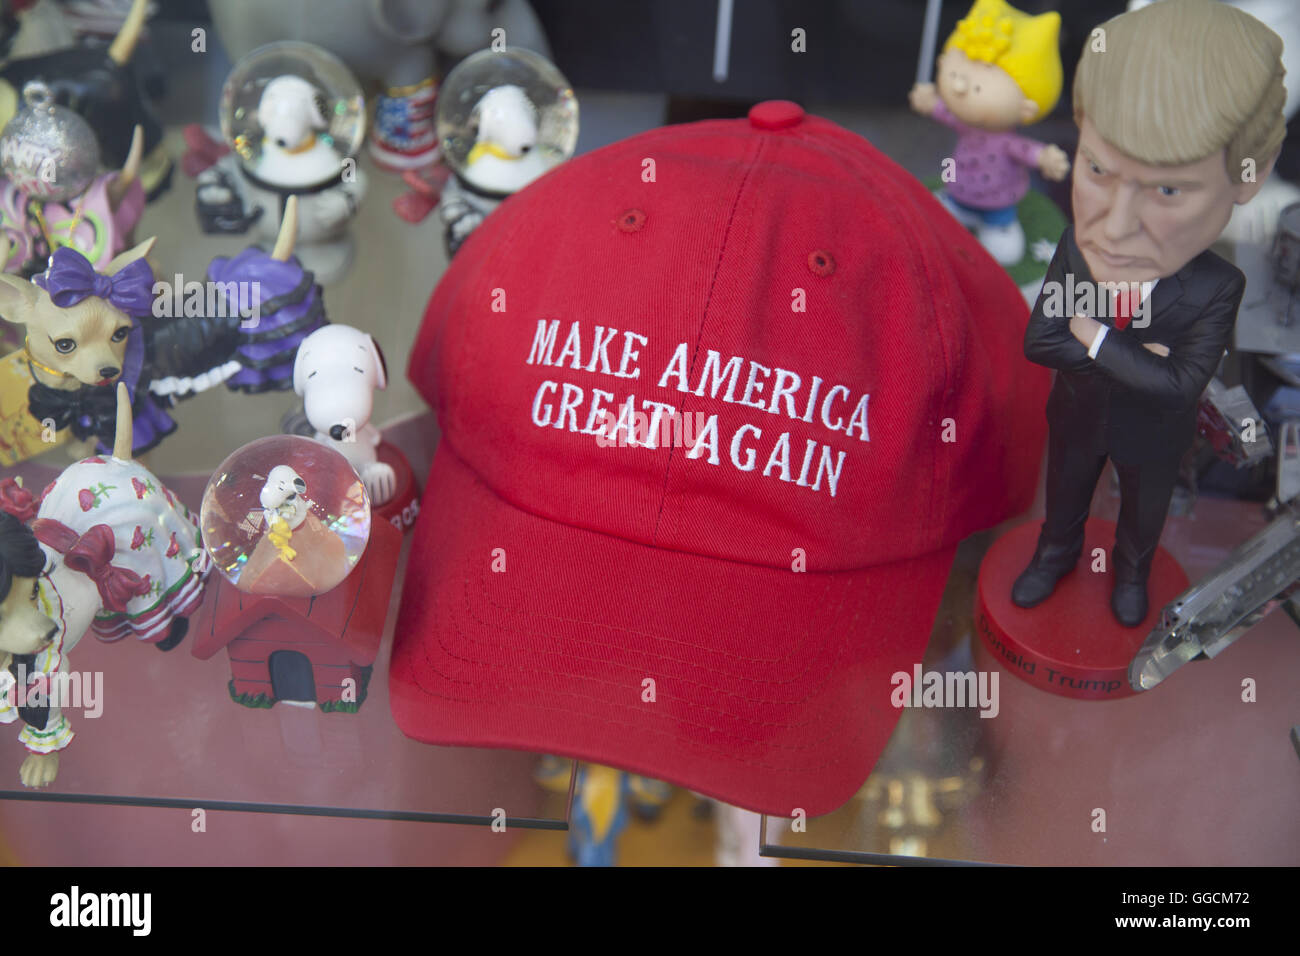 Caricatura de Donald Trump con hisiconic red hat en un recuerdo shope en la Ciudad de Nueva York. Foto de stock